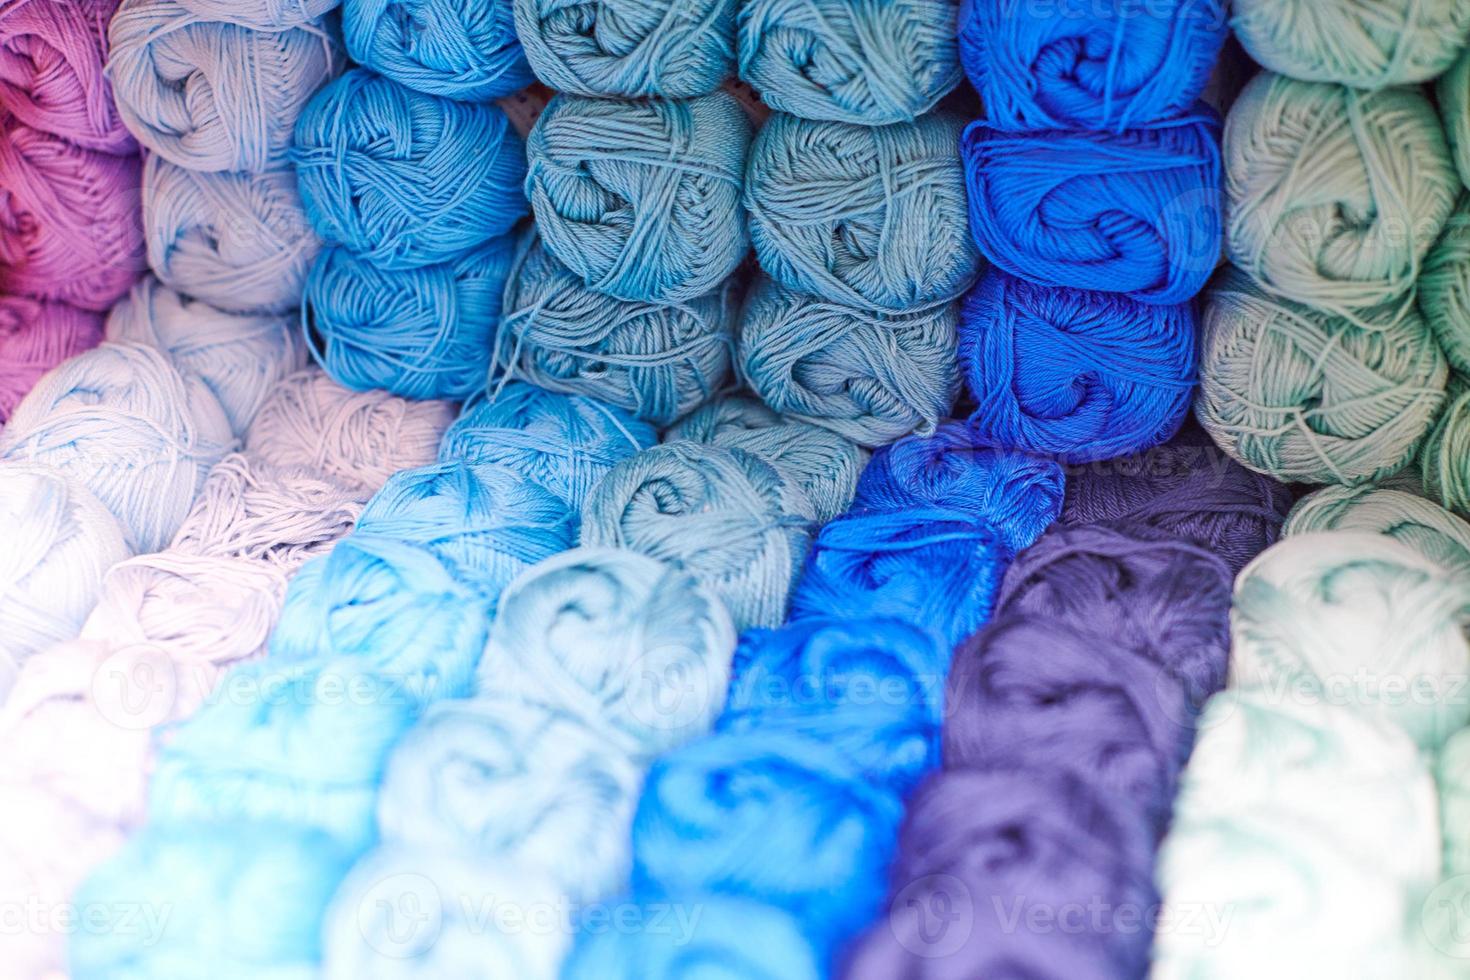 filati o gomitoli di lana sugli scaffali in negozio per lavorare a maglia foto